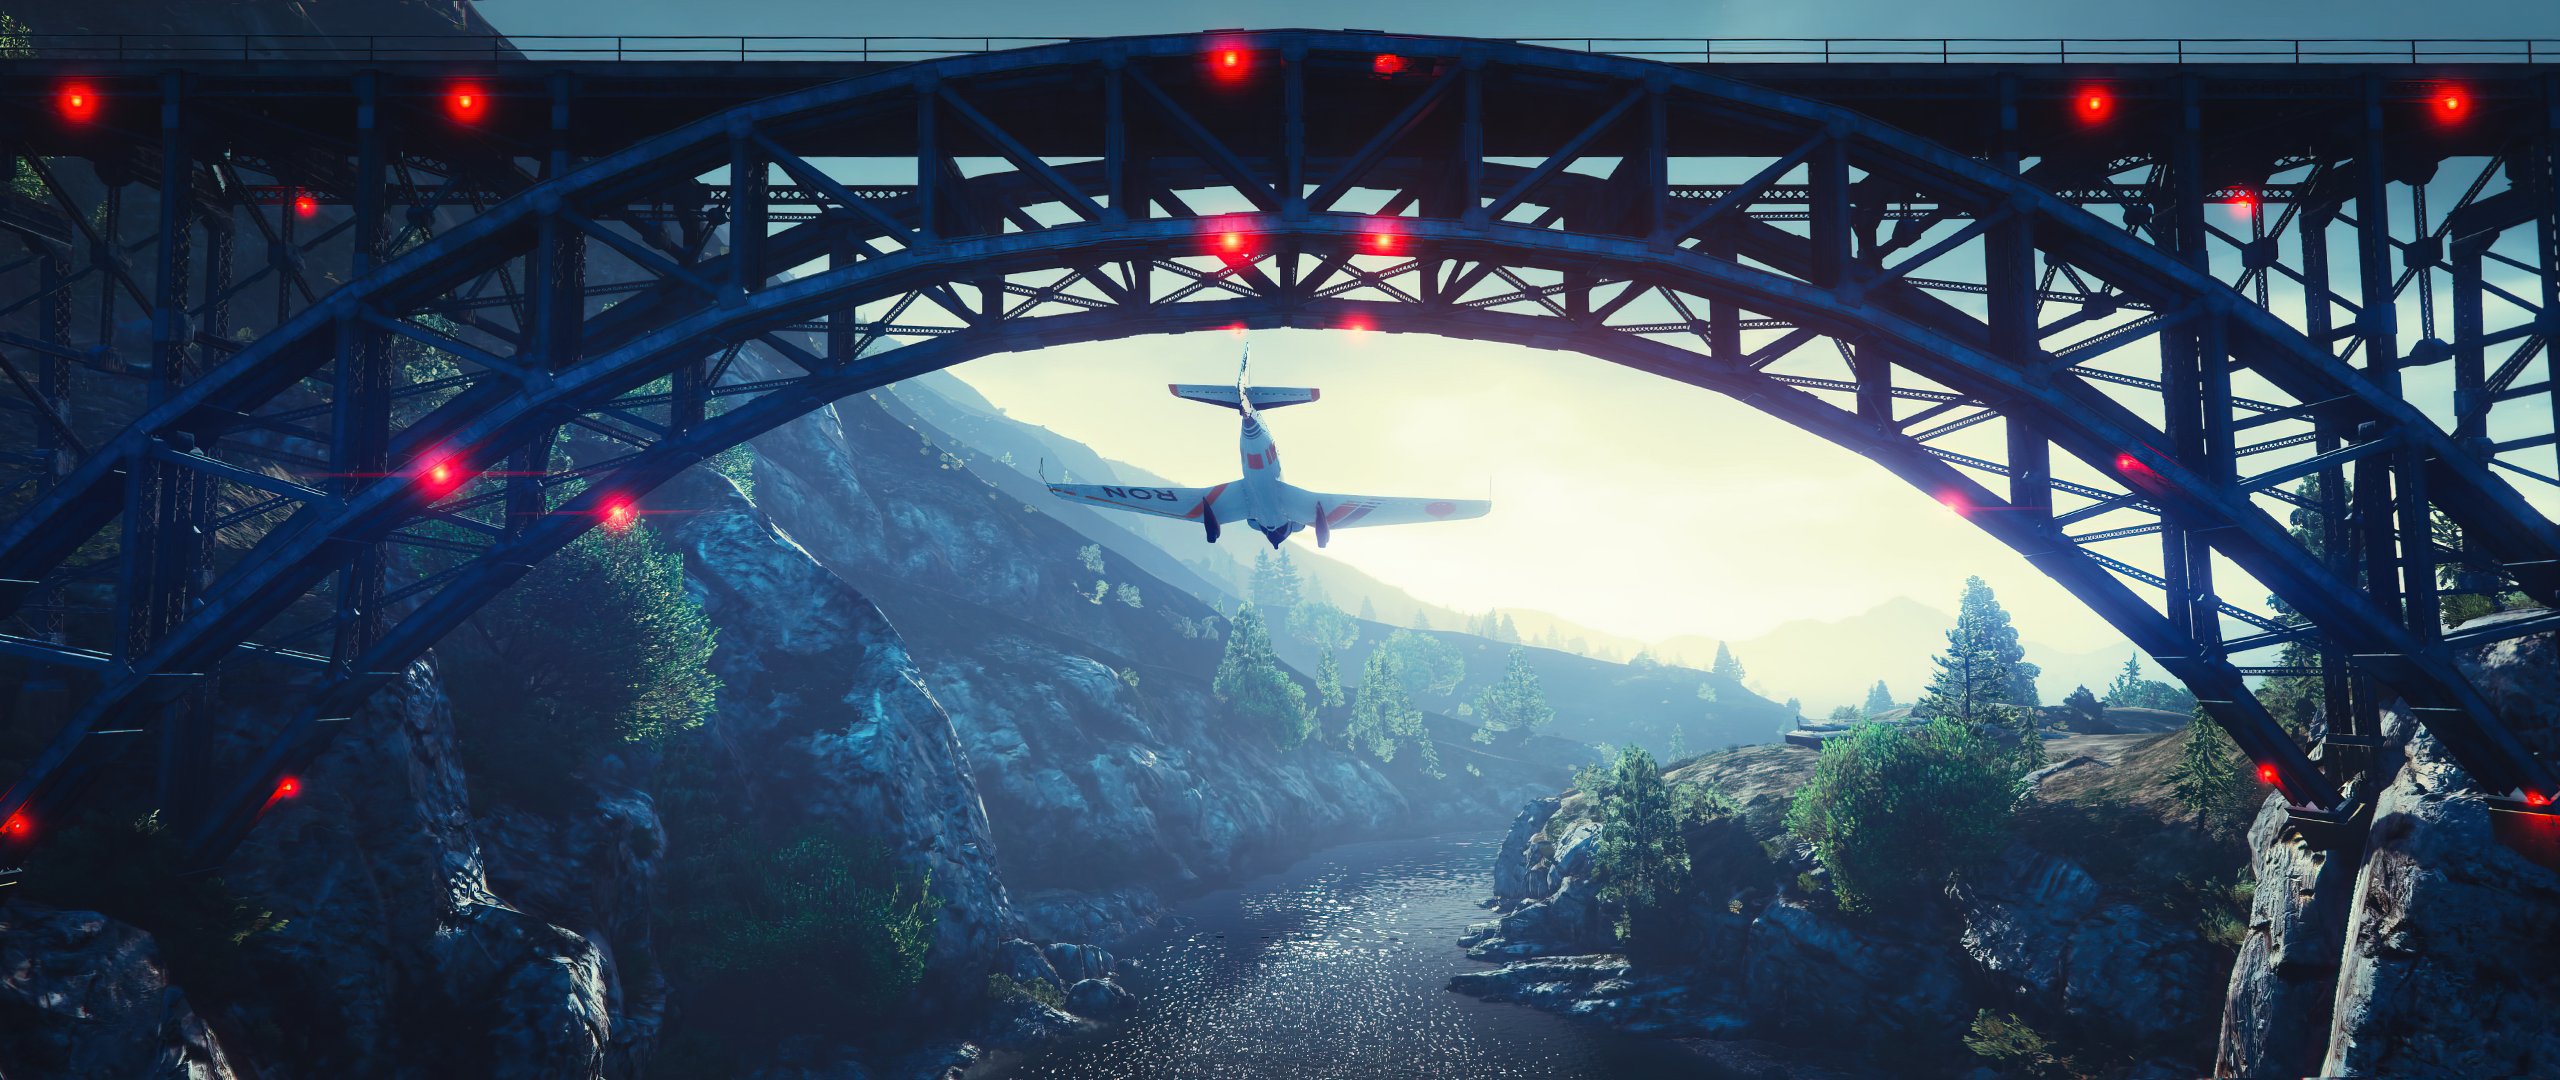 Grand Theft Auto V Planes Rockstar Games CGi Aircraft Bridge Video Games 2560x1080